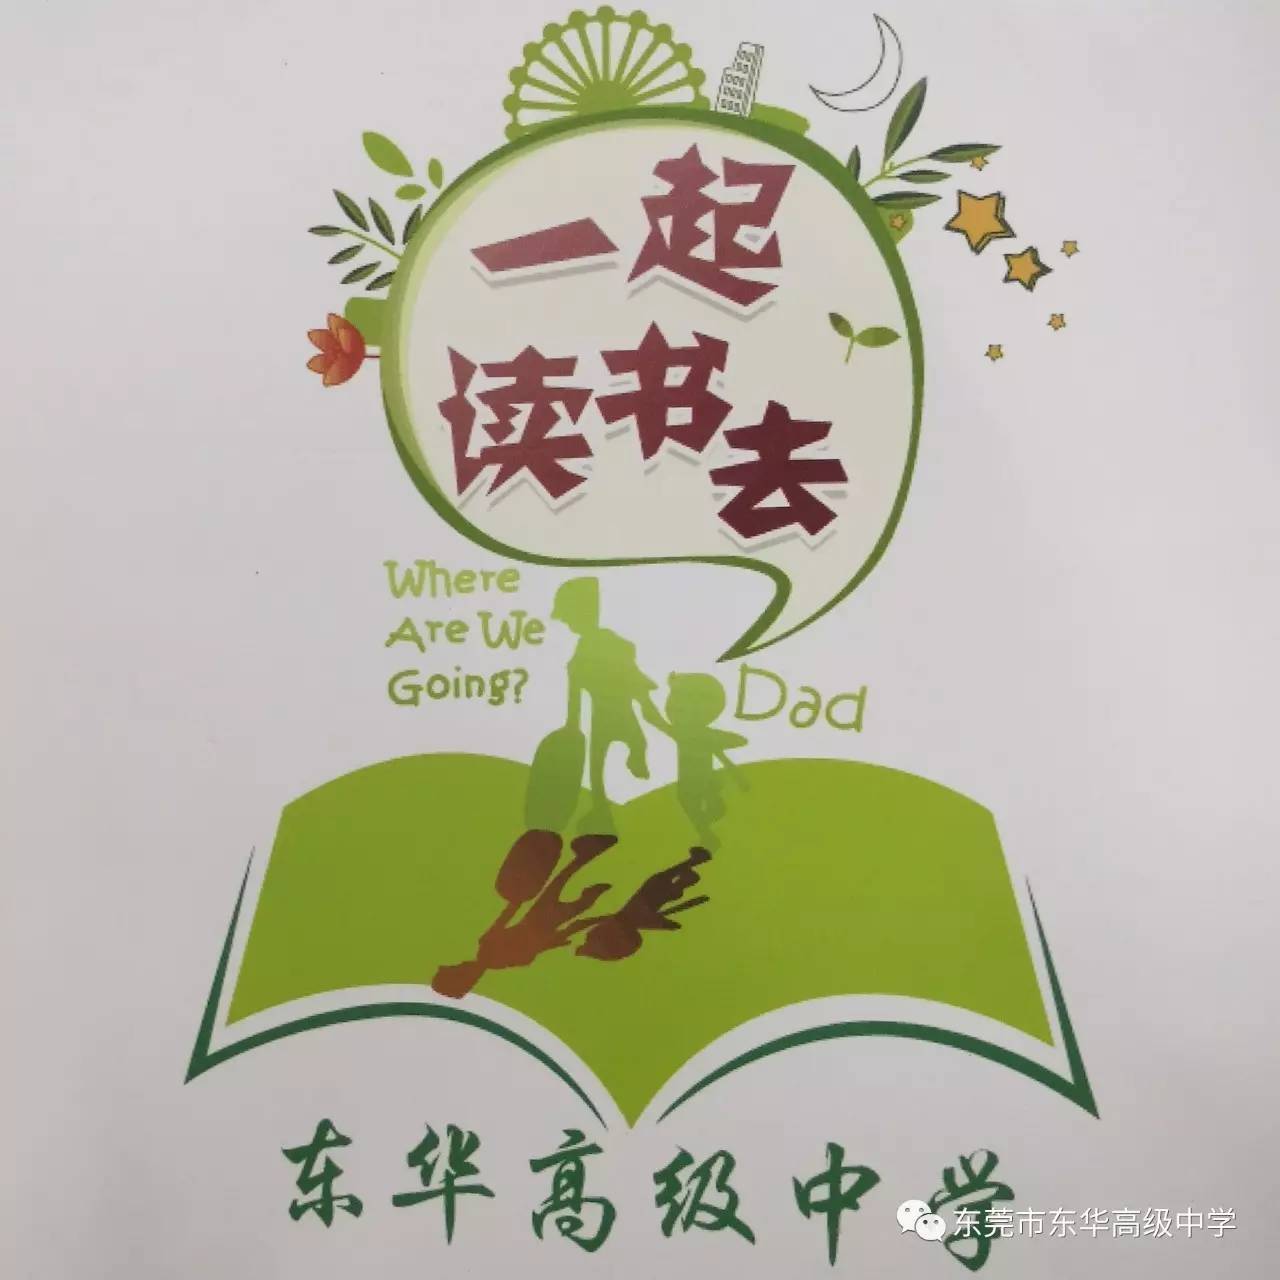 生态园校区举行读书节logo 征集大赛